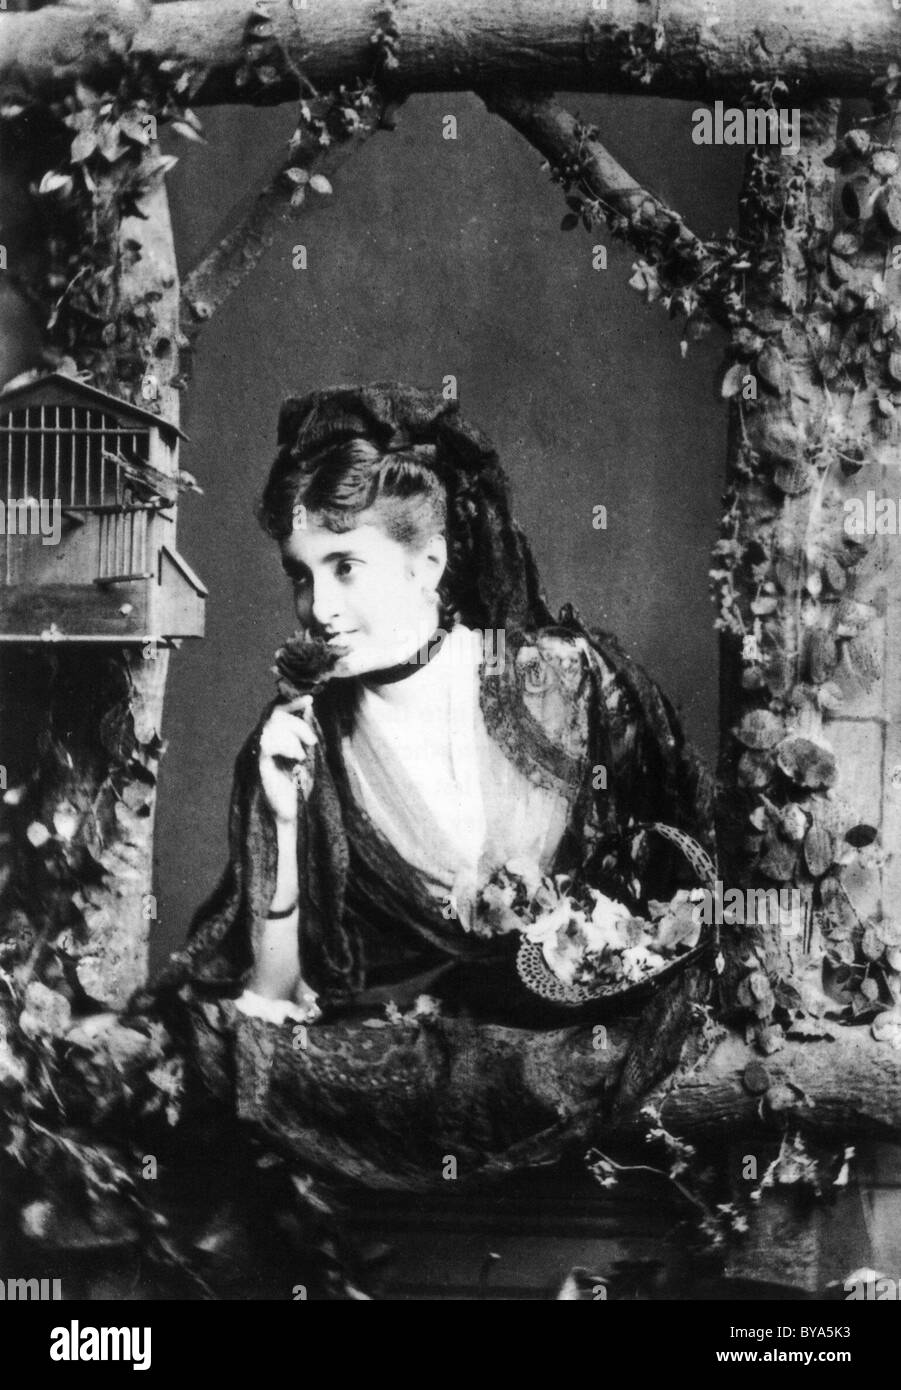 ADELINA PATTI (1843-1919) italienischer Opern Koloratur-Sopranistin Stockfoto